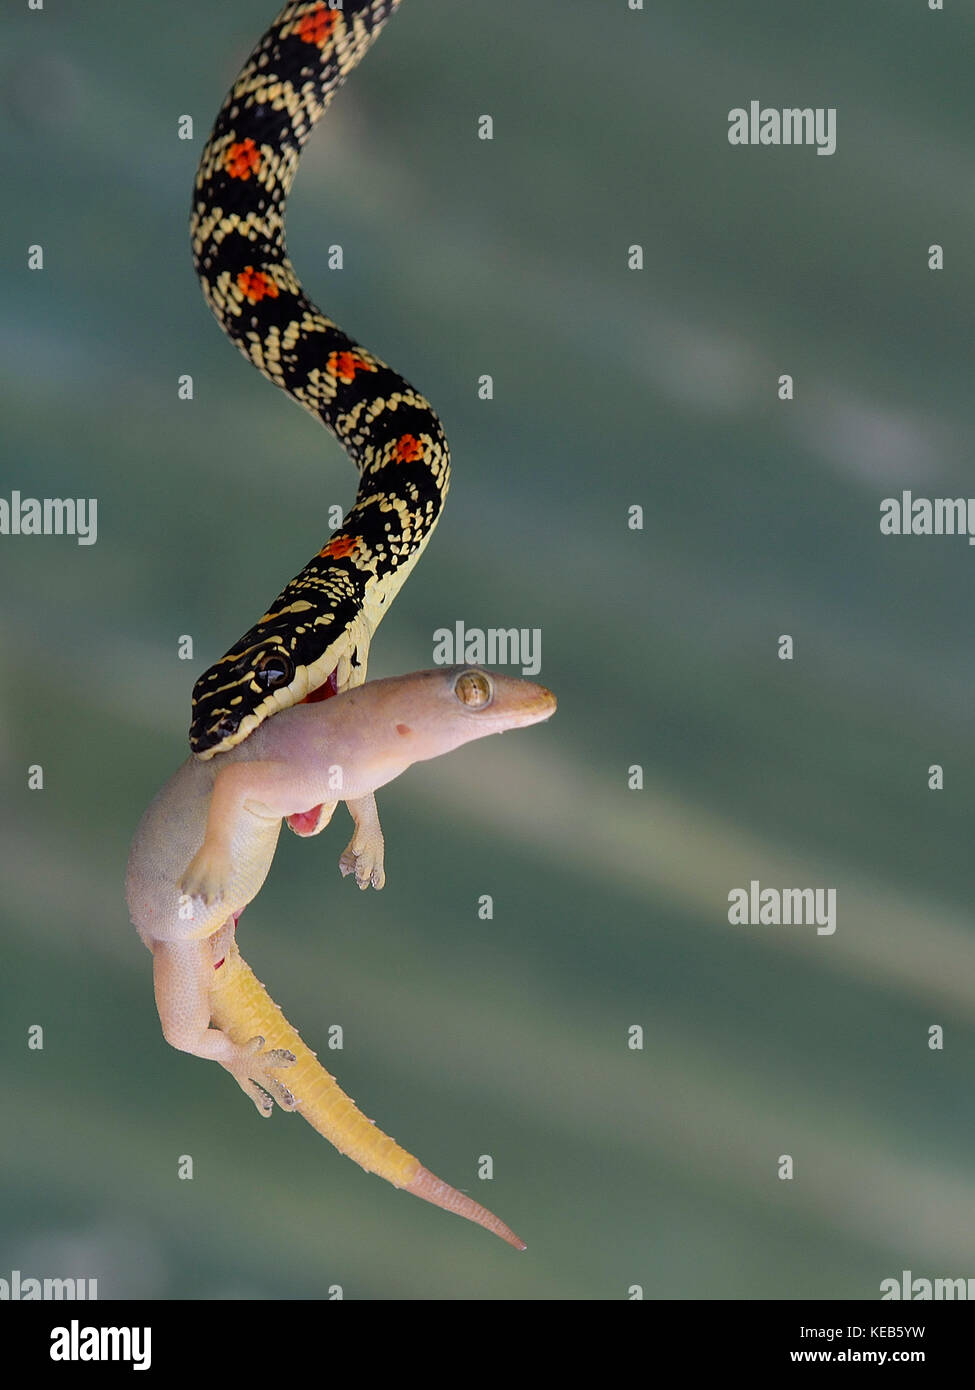 Ornate Flying Snake or Golden Flying Snake at Manas National Park, Assam India Stock Photo